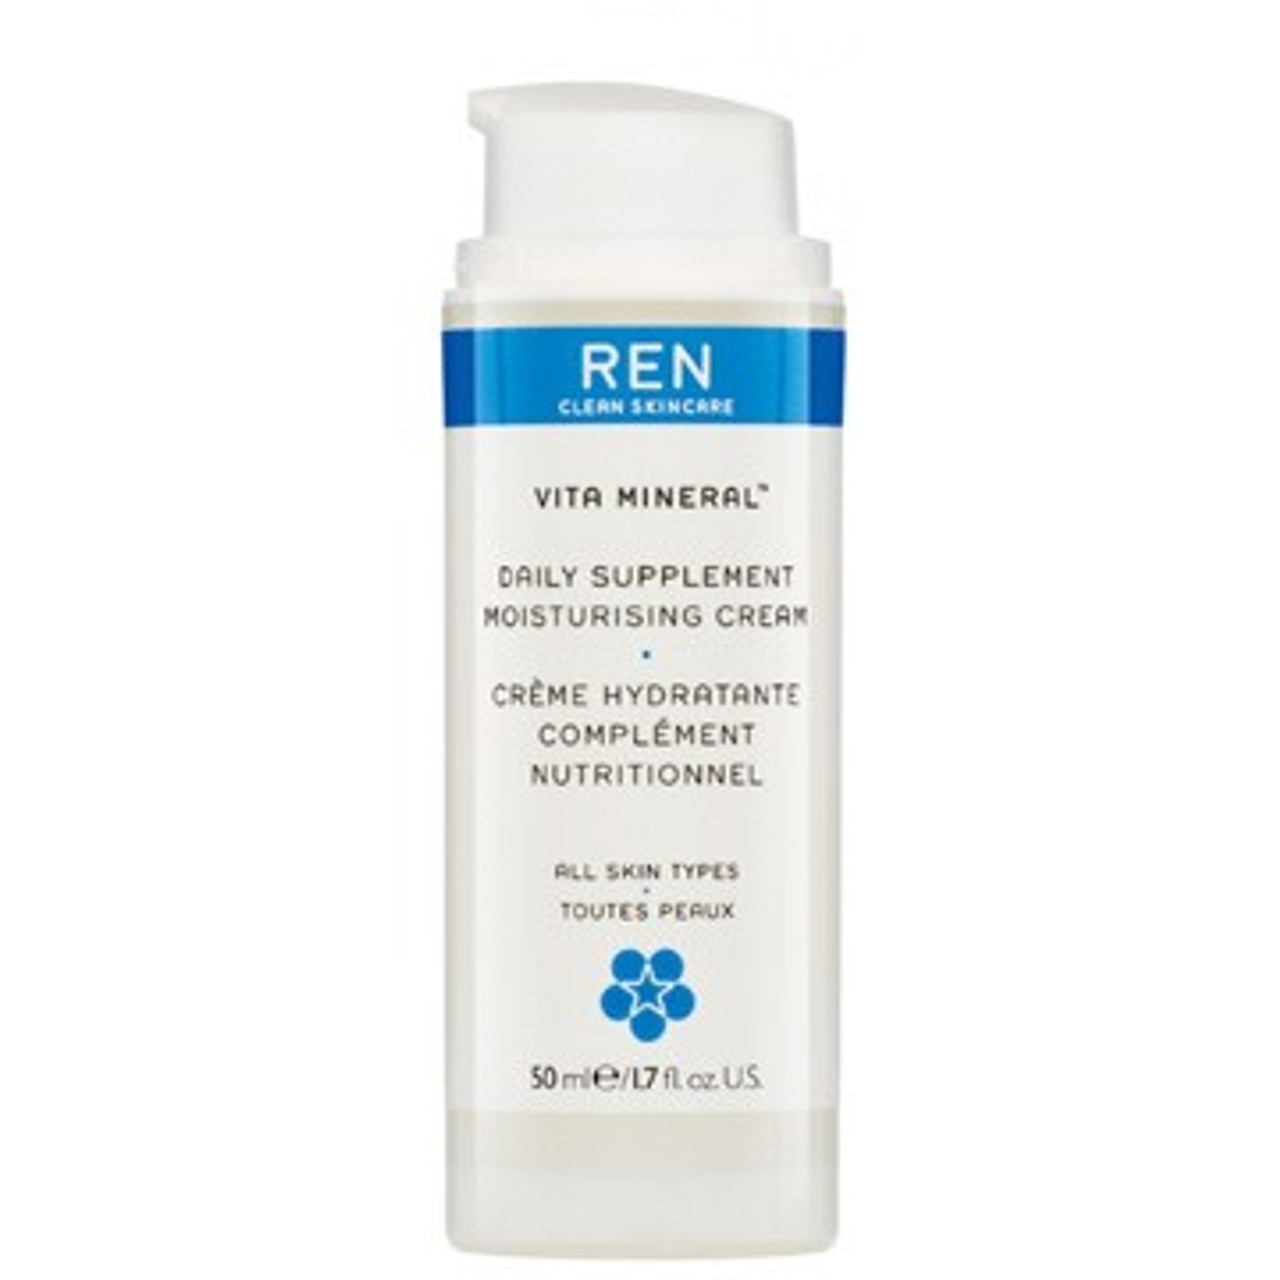 REN Vita Mineral Daily Supplement Moisturising Cream - 1.7 oz (3708)